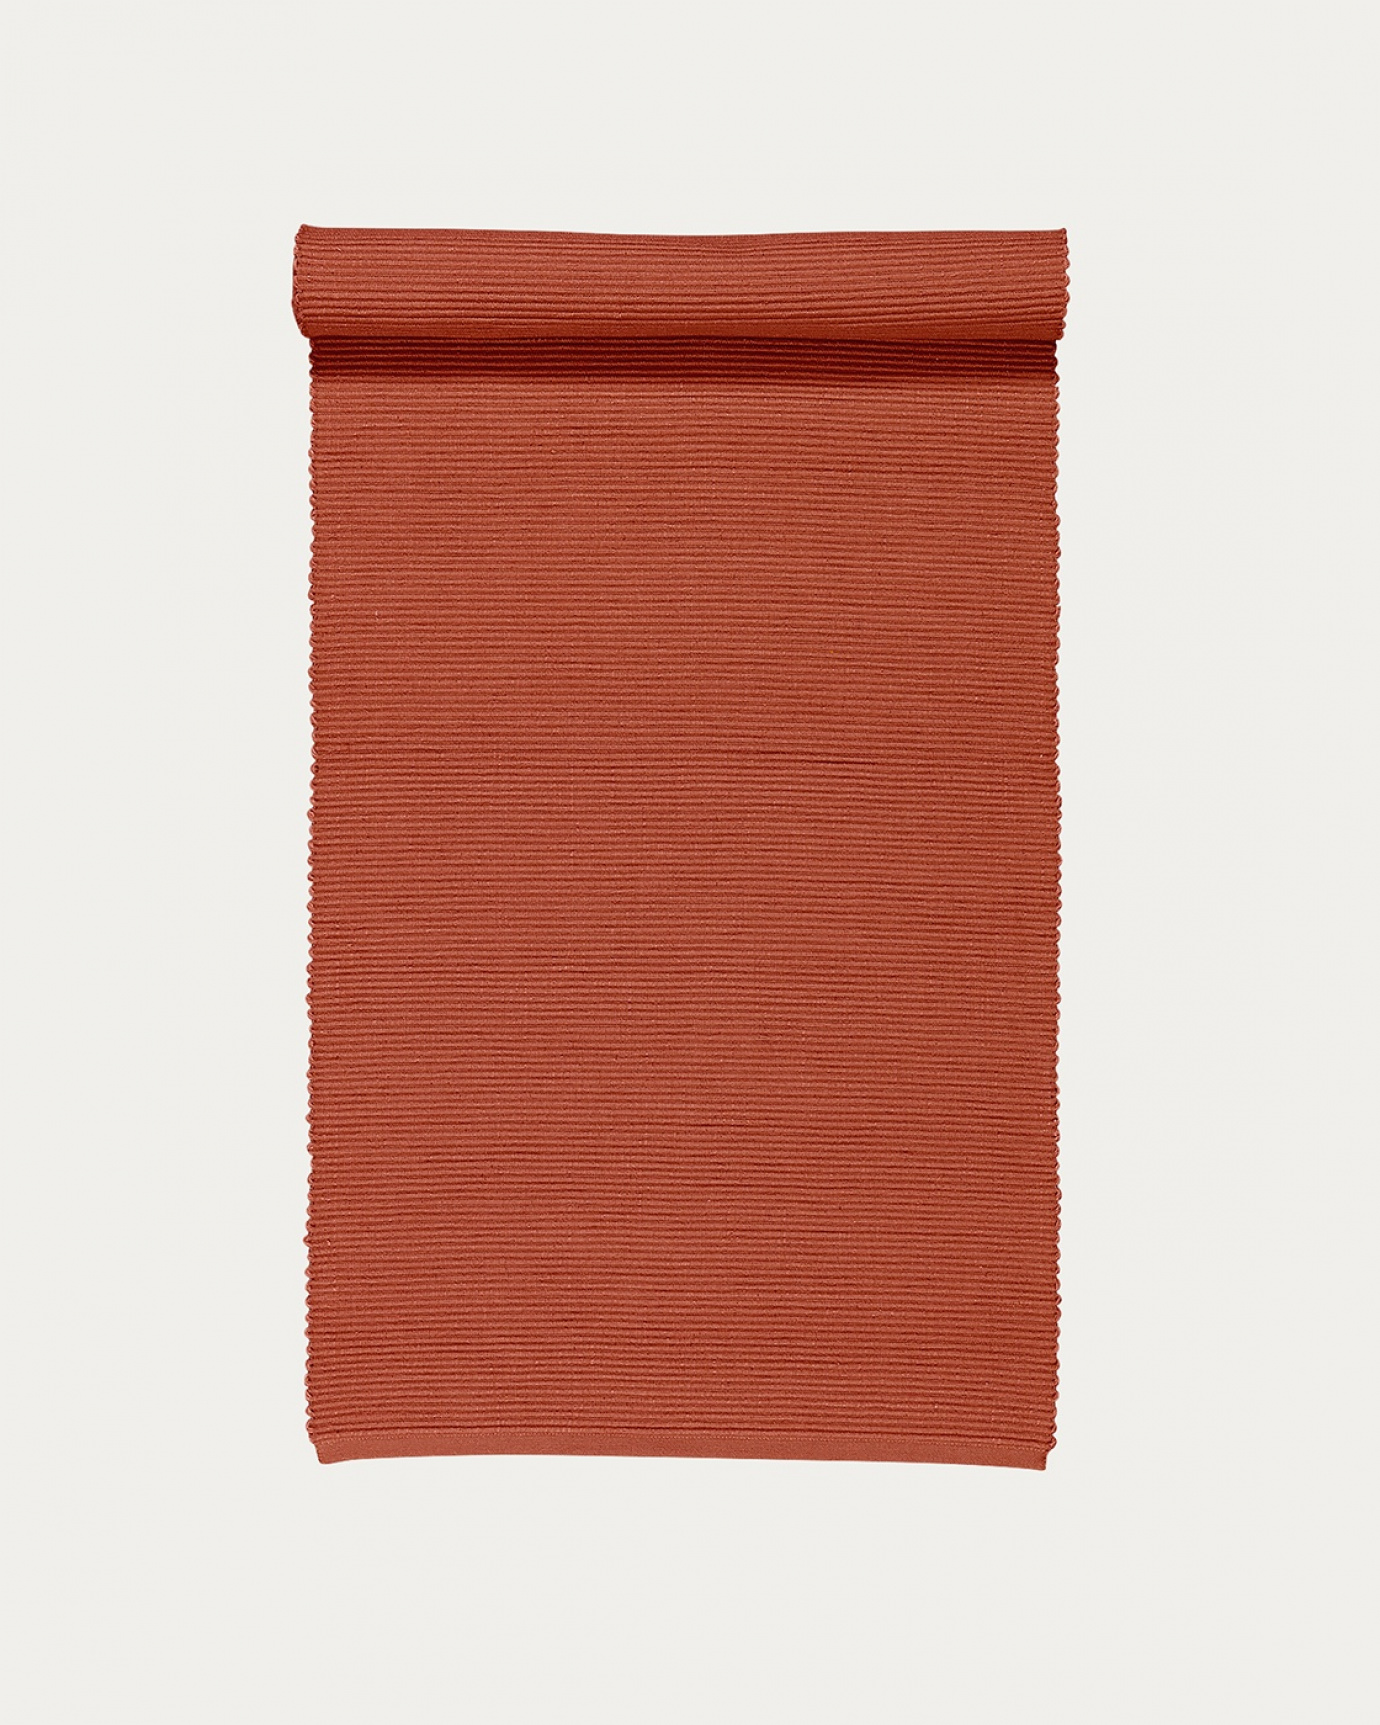 Produktbild rostorange UNI Tischläufer aus weicher Baumwolle in Rippenqualität von LINUM DESIGN. Größe 45x150 cm.